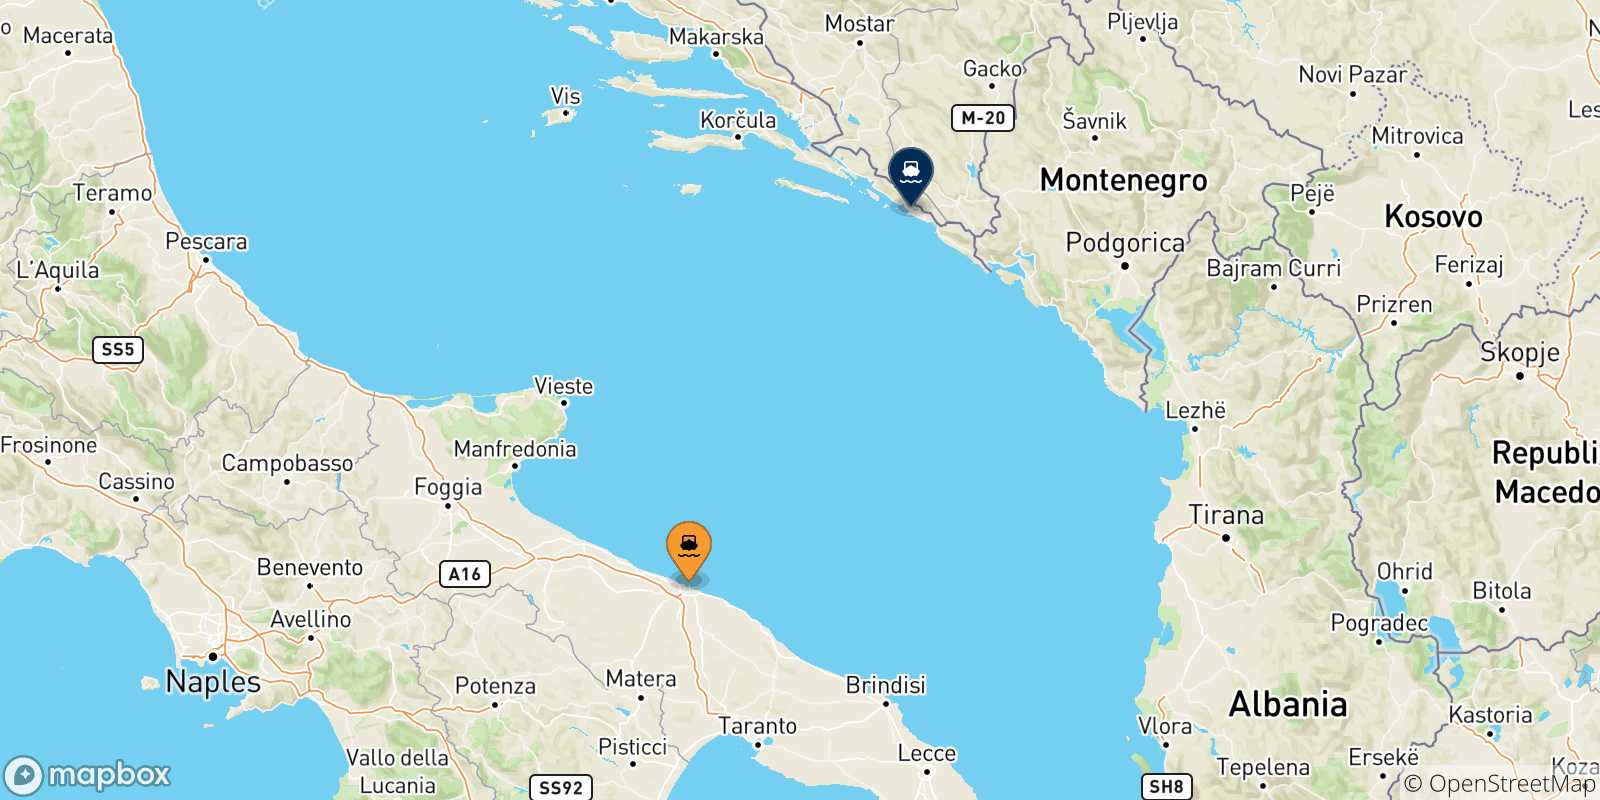 Mappa delle possibili rotte tra Bari e la Croazia